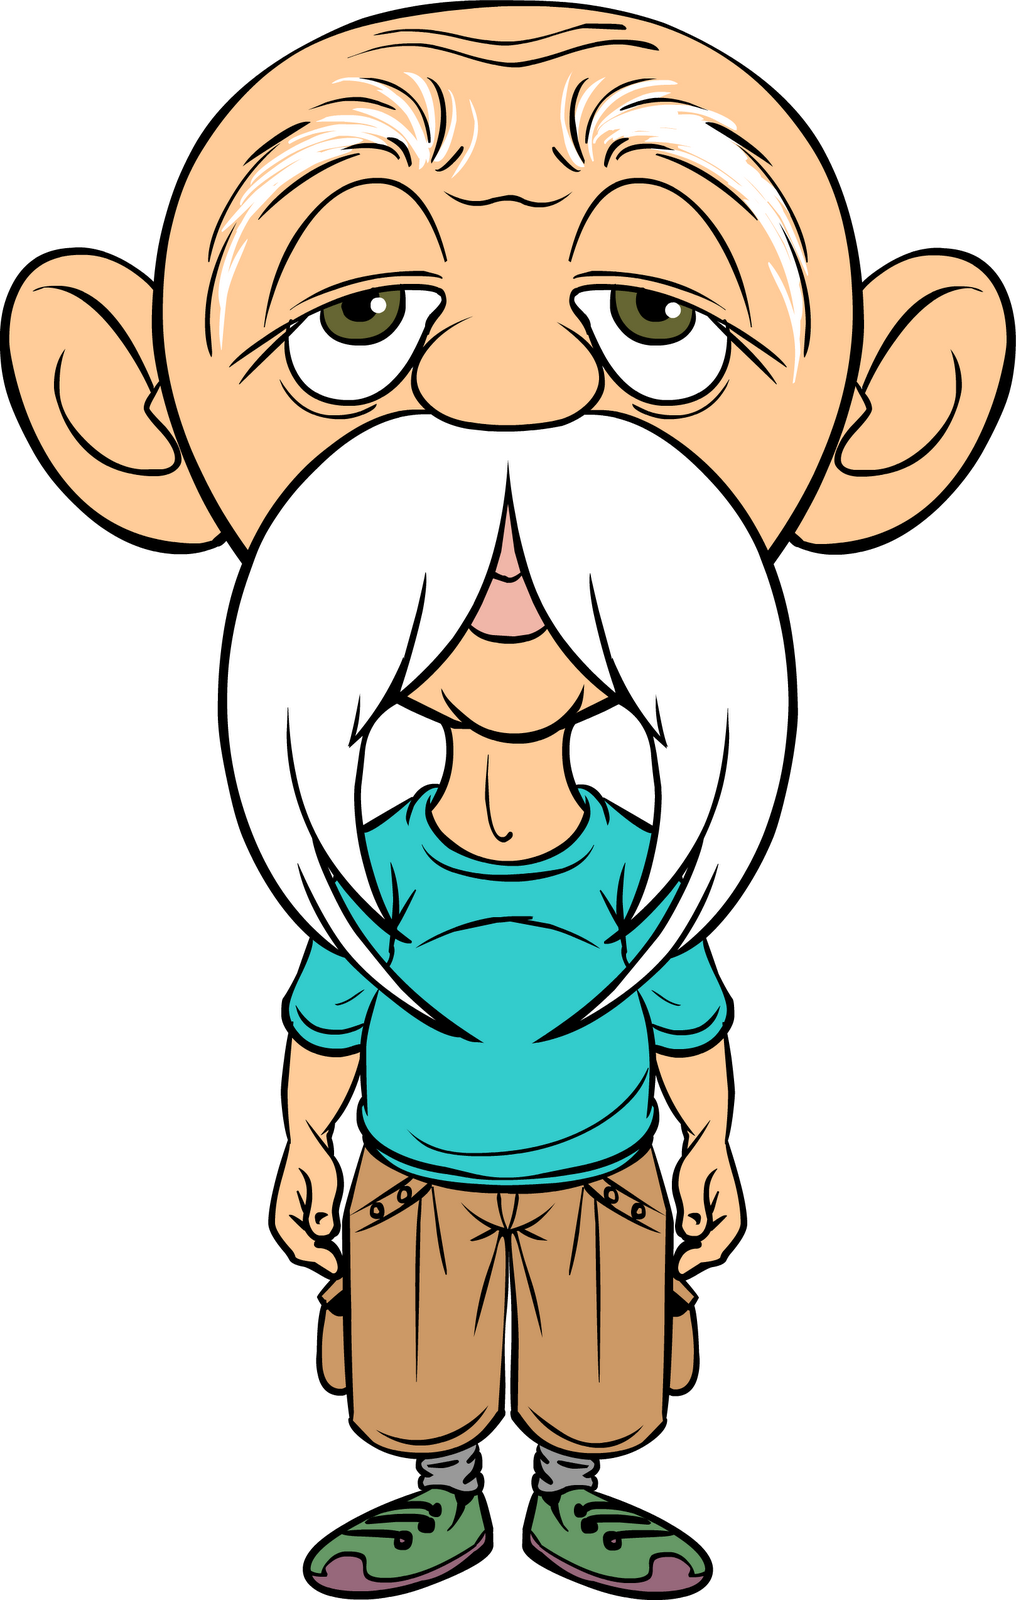 Old Man Cartoon - Old Man Cartoon Characters (1016x1600)